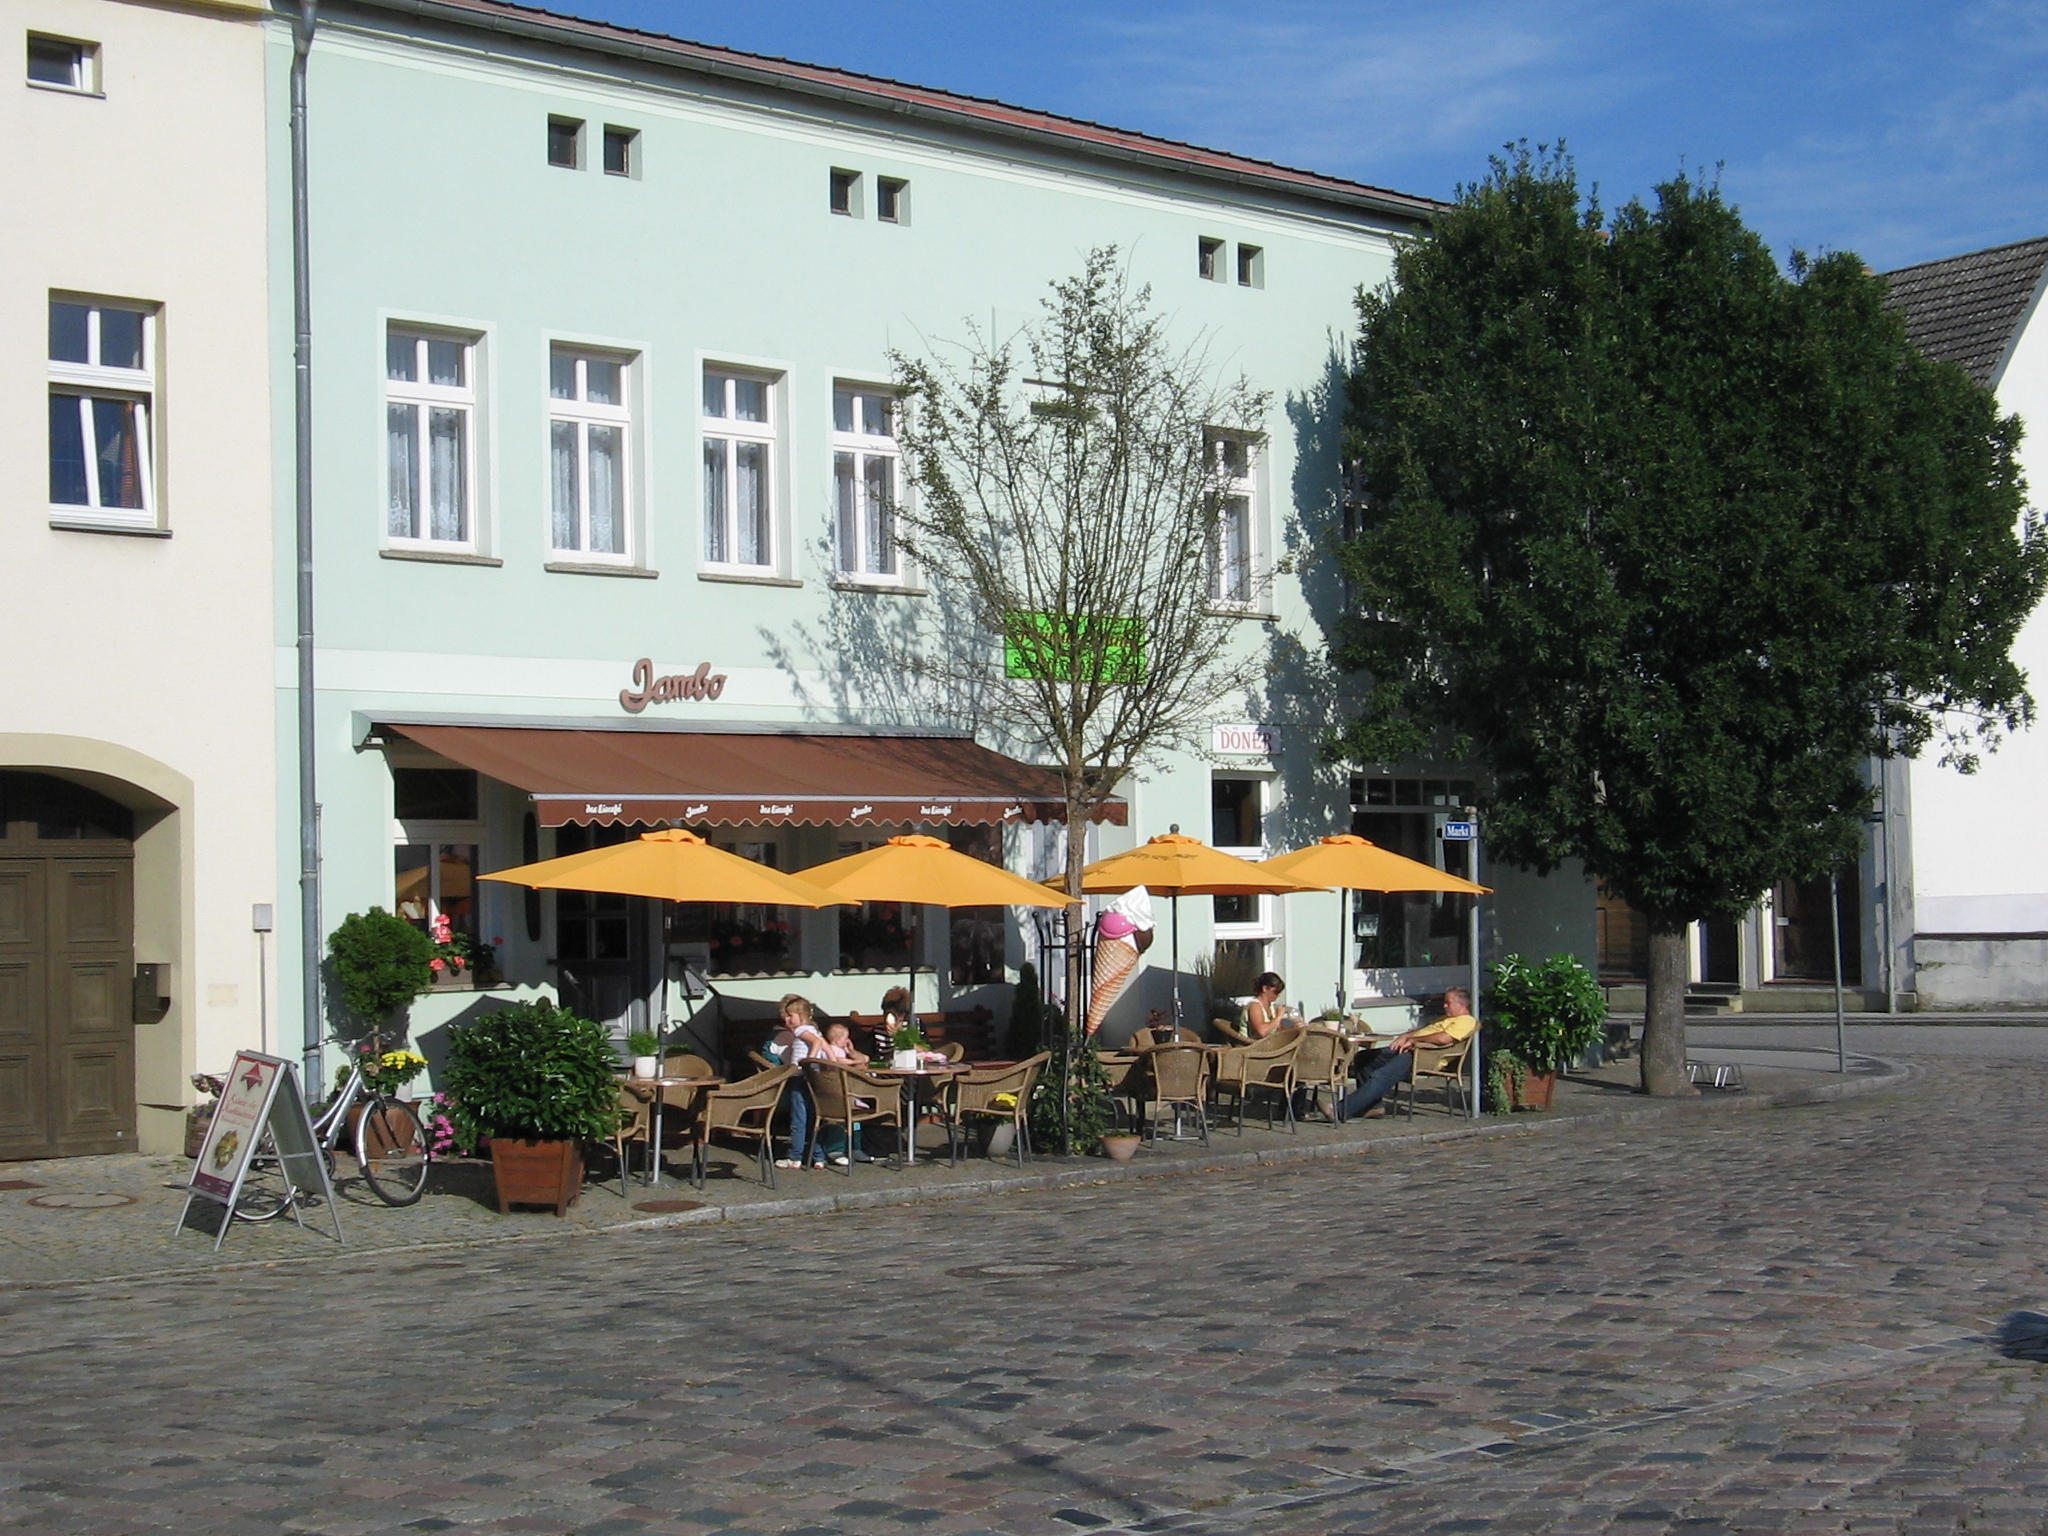 Jambo Eiscafé am Markt in Lieberose